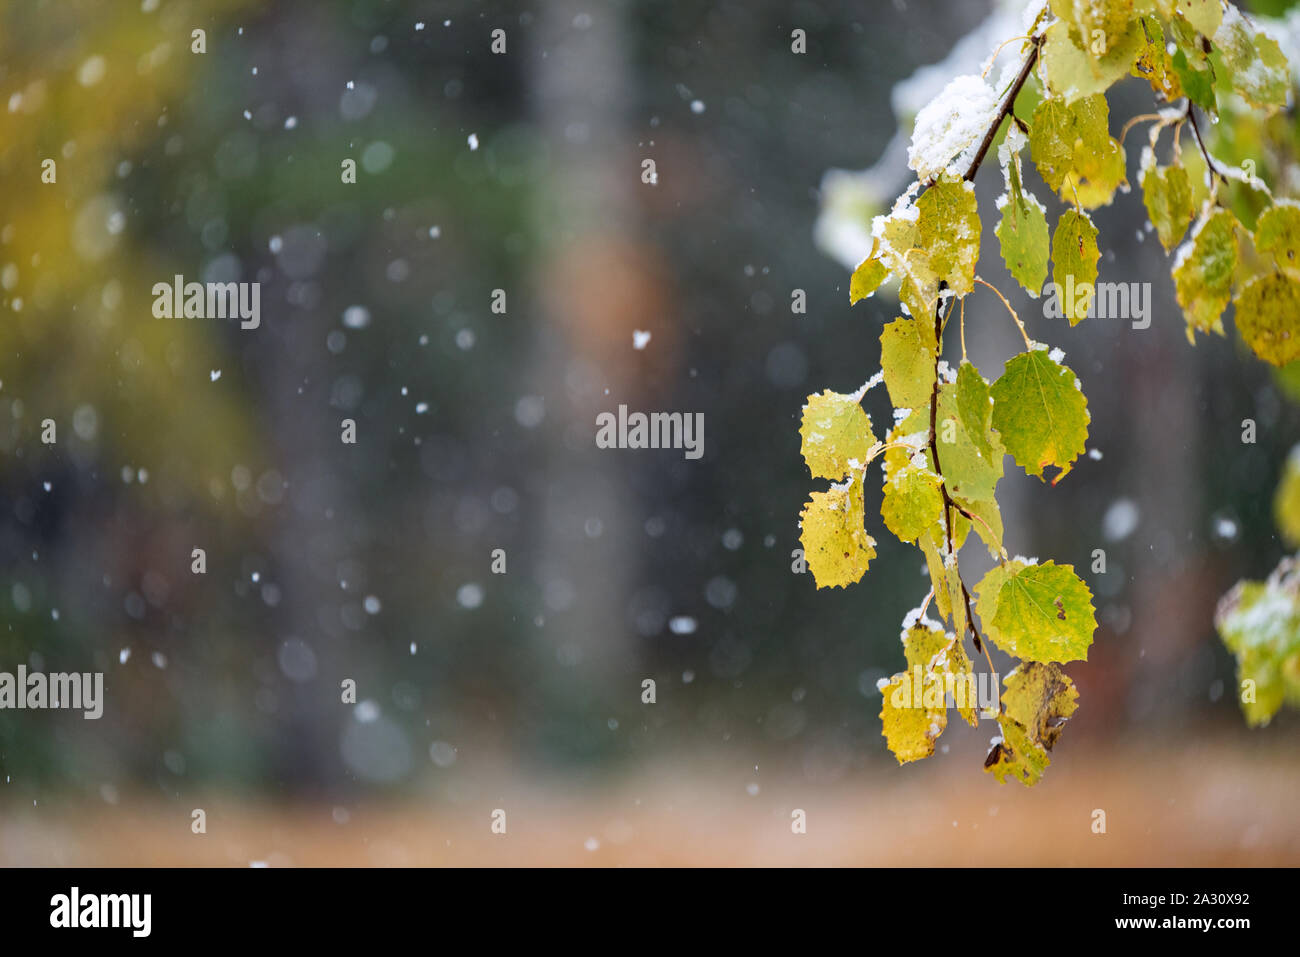 Les feuilles d'automne de tremble (Populus tremula 'Erecta') recouvert de neige, arrière-plan flou avec des chutes de neige Banque D'Images